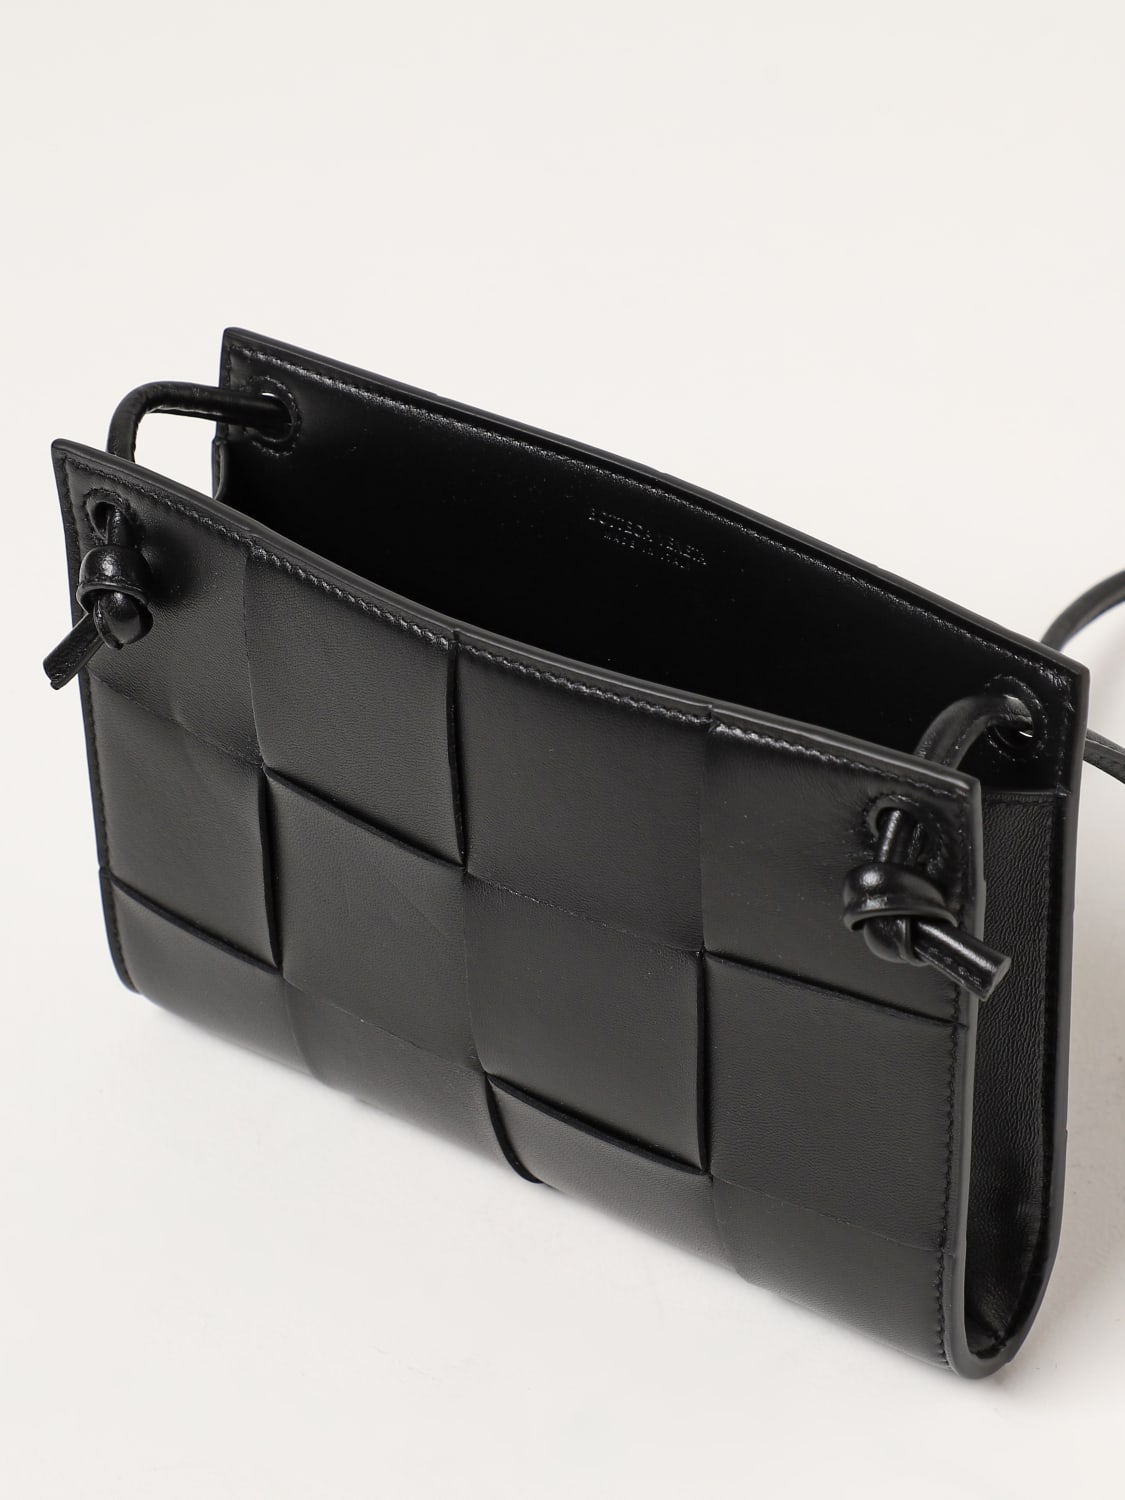 Bottega Veneta Shoulder bag 'Cassette' Black